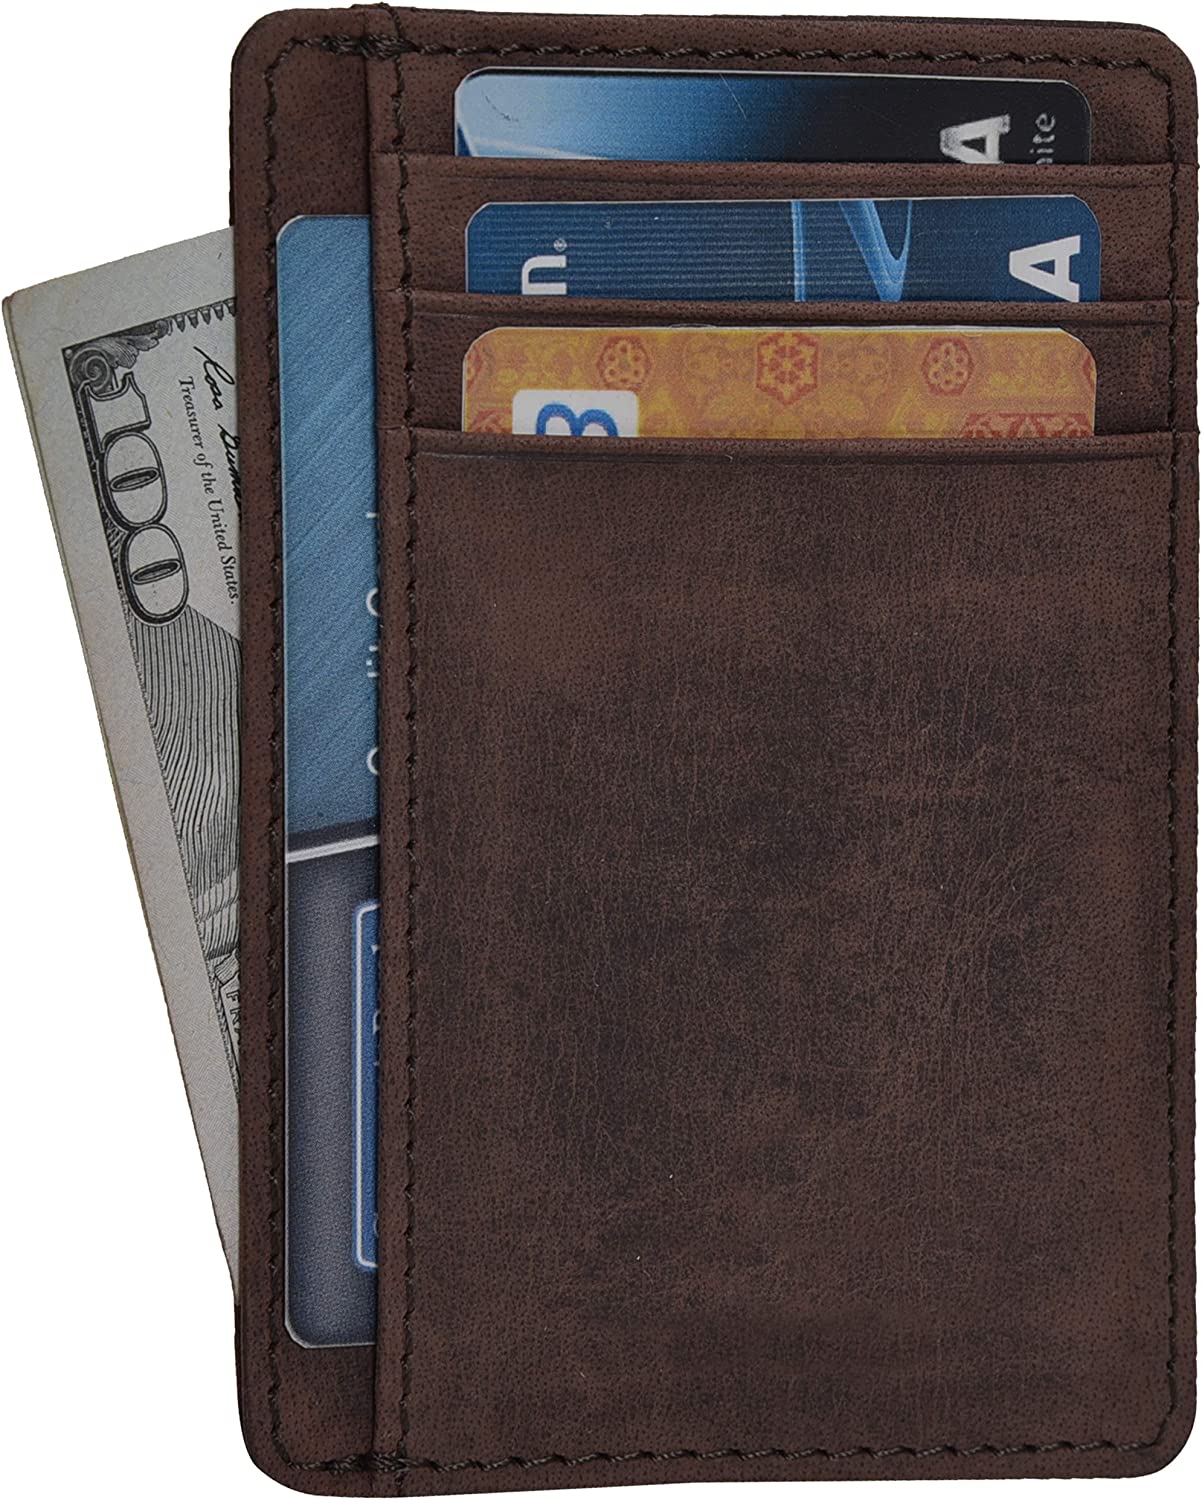 Minimalist Wallets